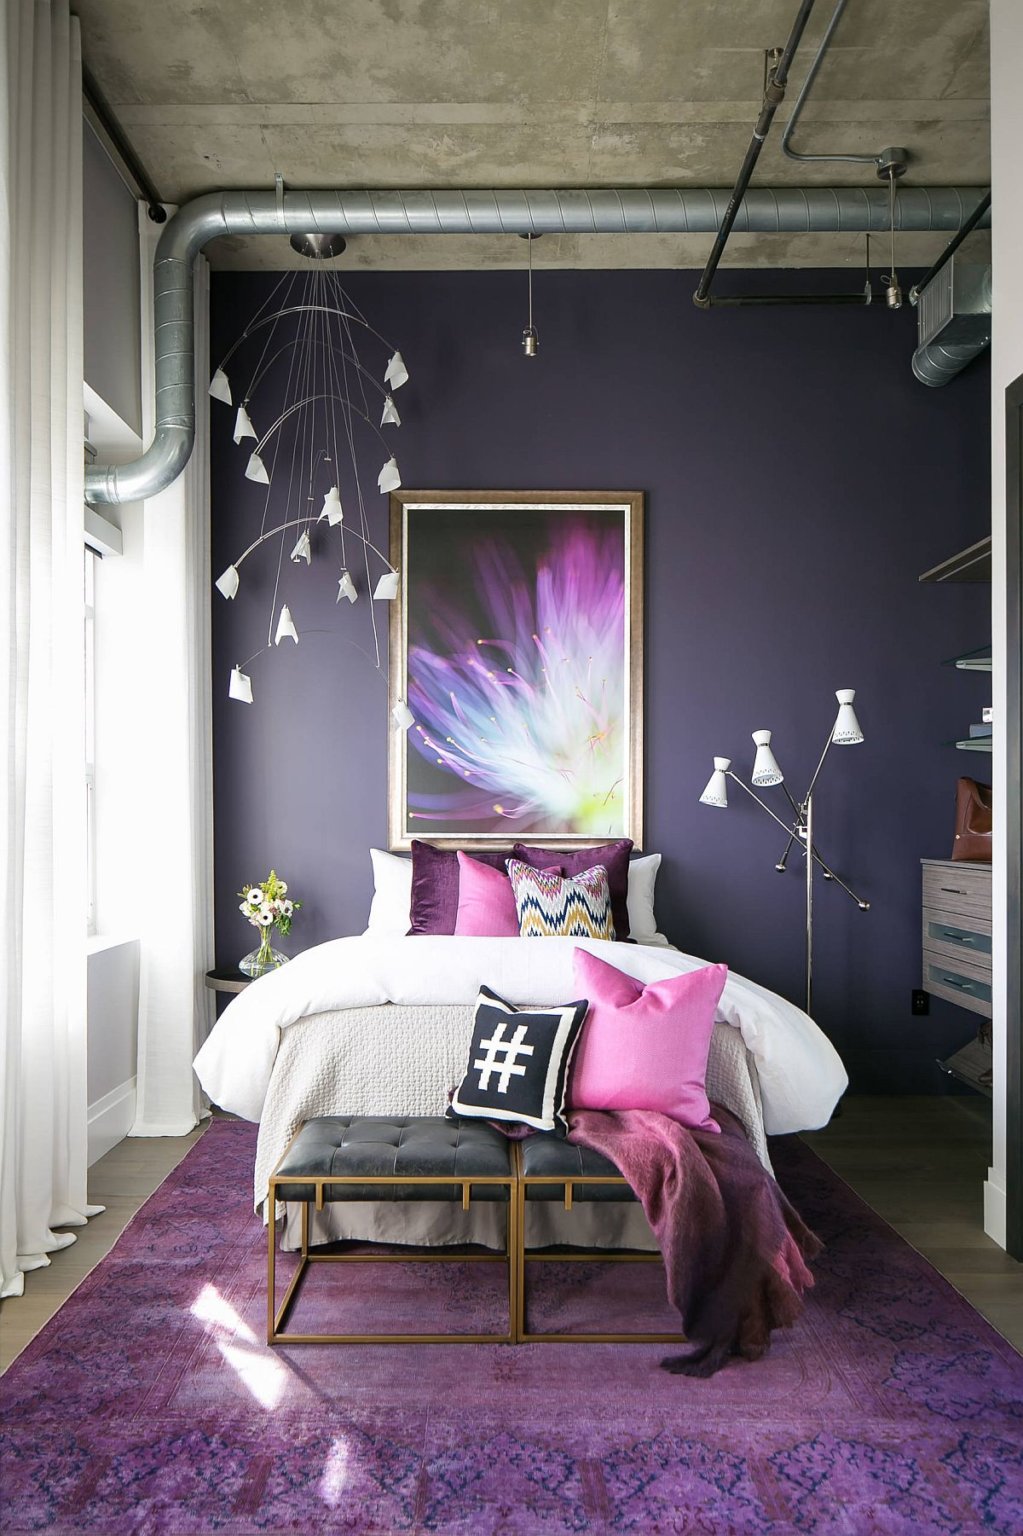 hình ảnh phòng ngủ nhỏ màu tím nhẹ nhàng, lãng mạn